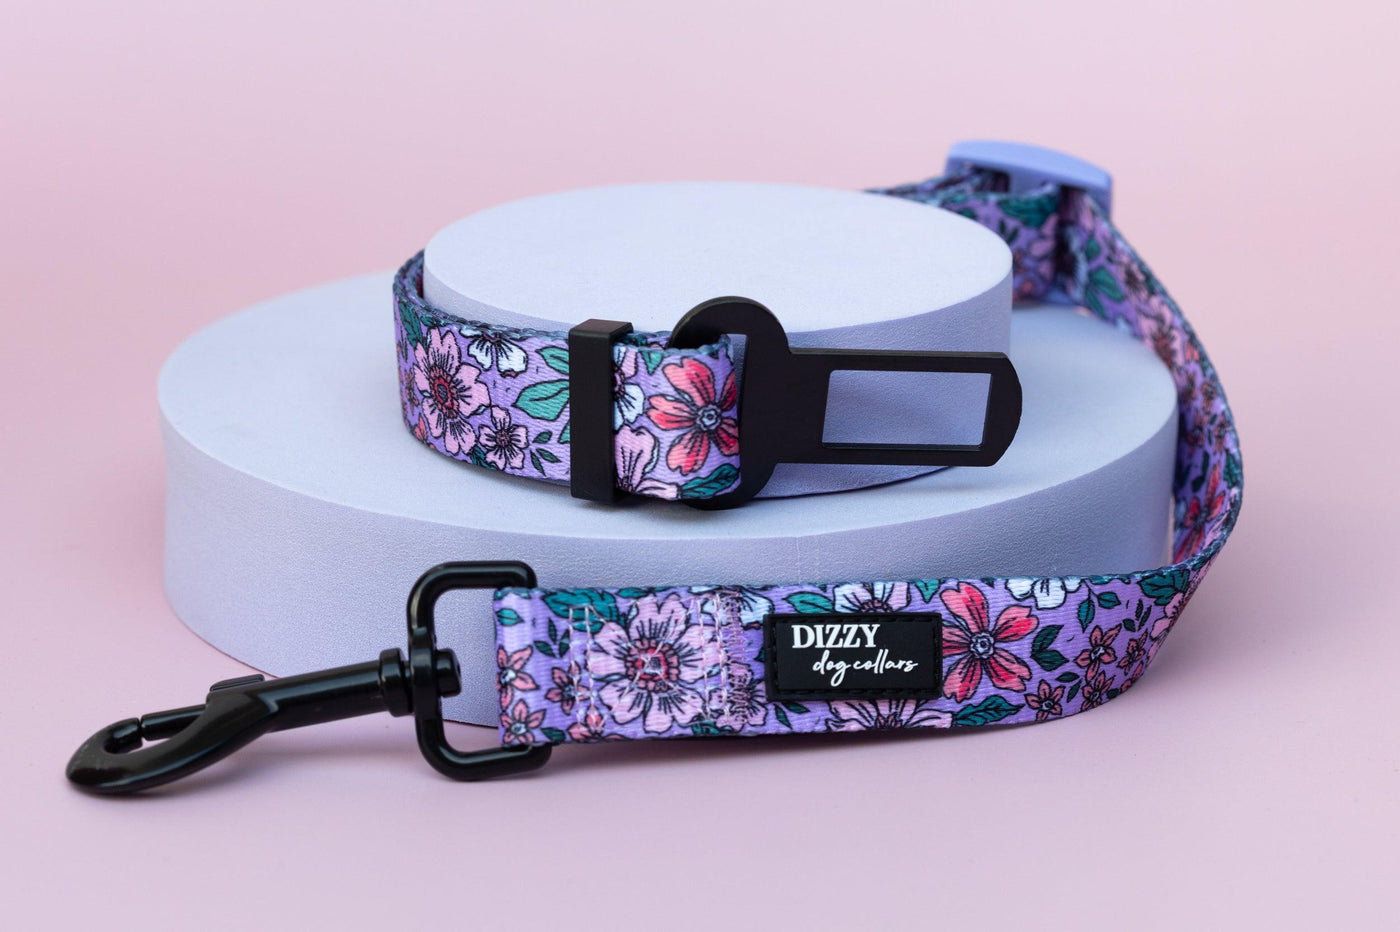 Dog Car Seatbelt | Dog Car Restraint Tether | Lilac Floral-Dizzy Dog Collars